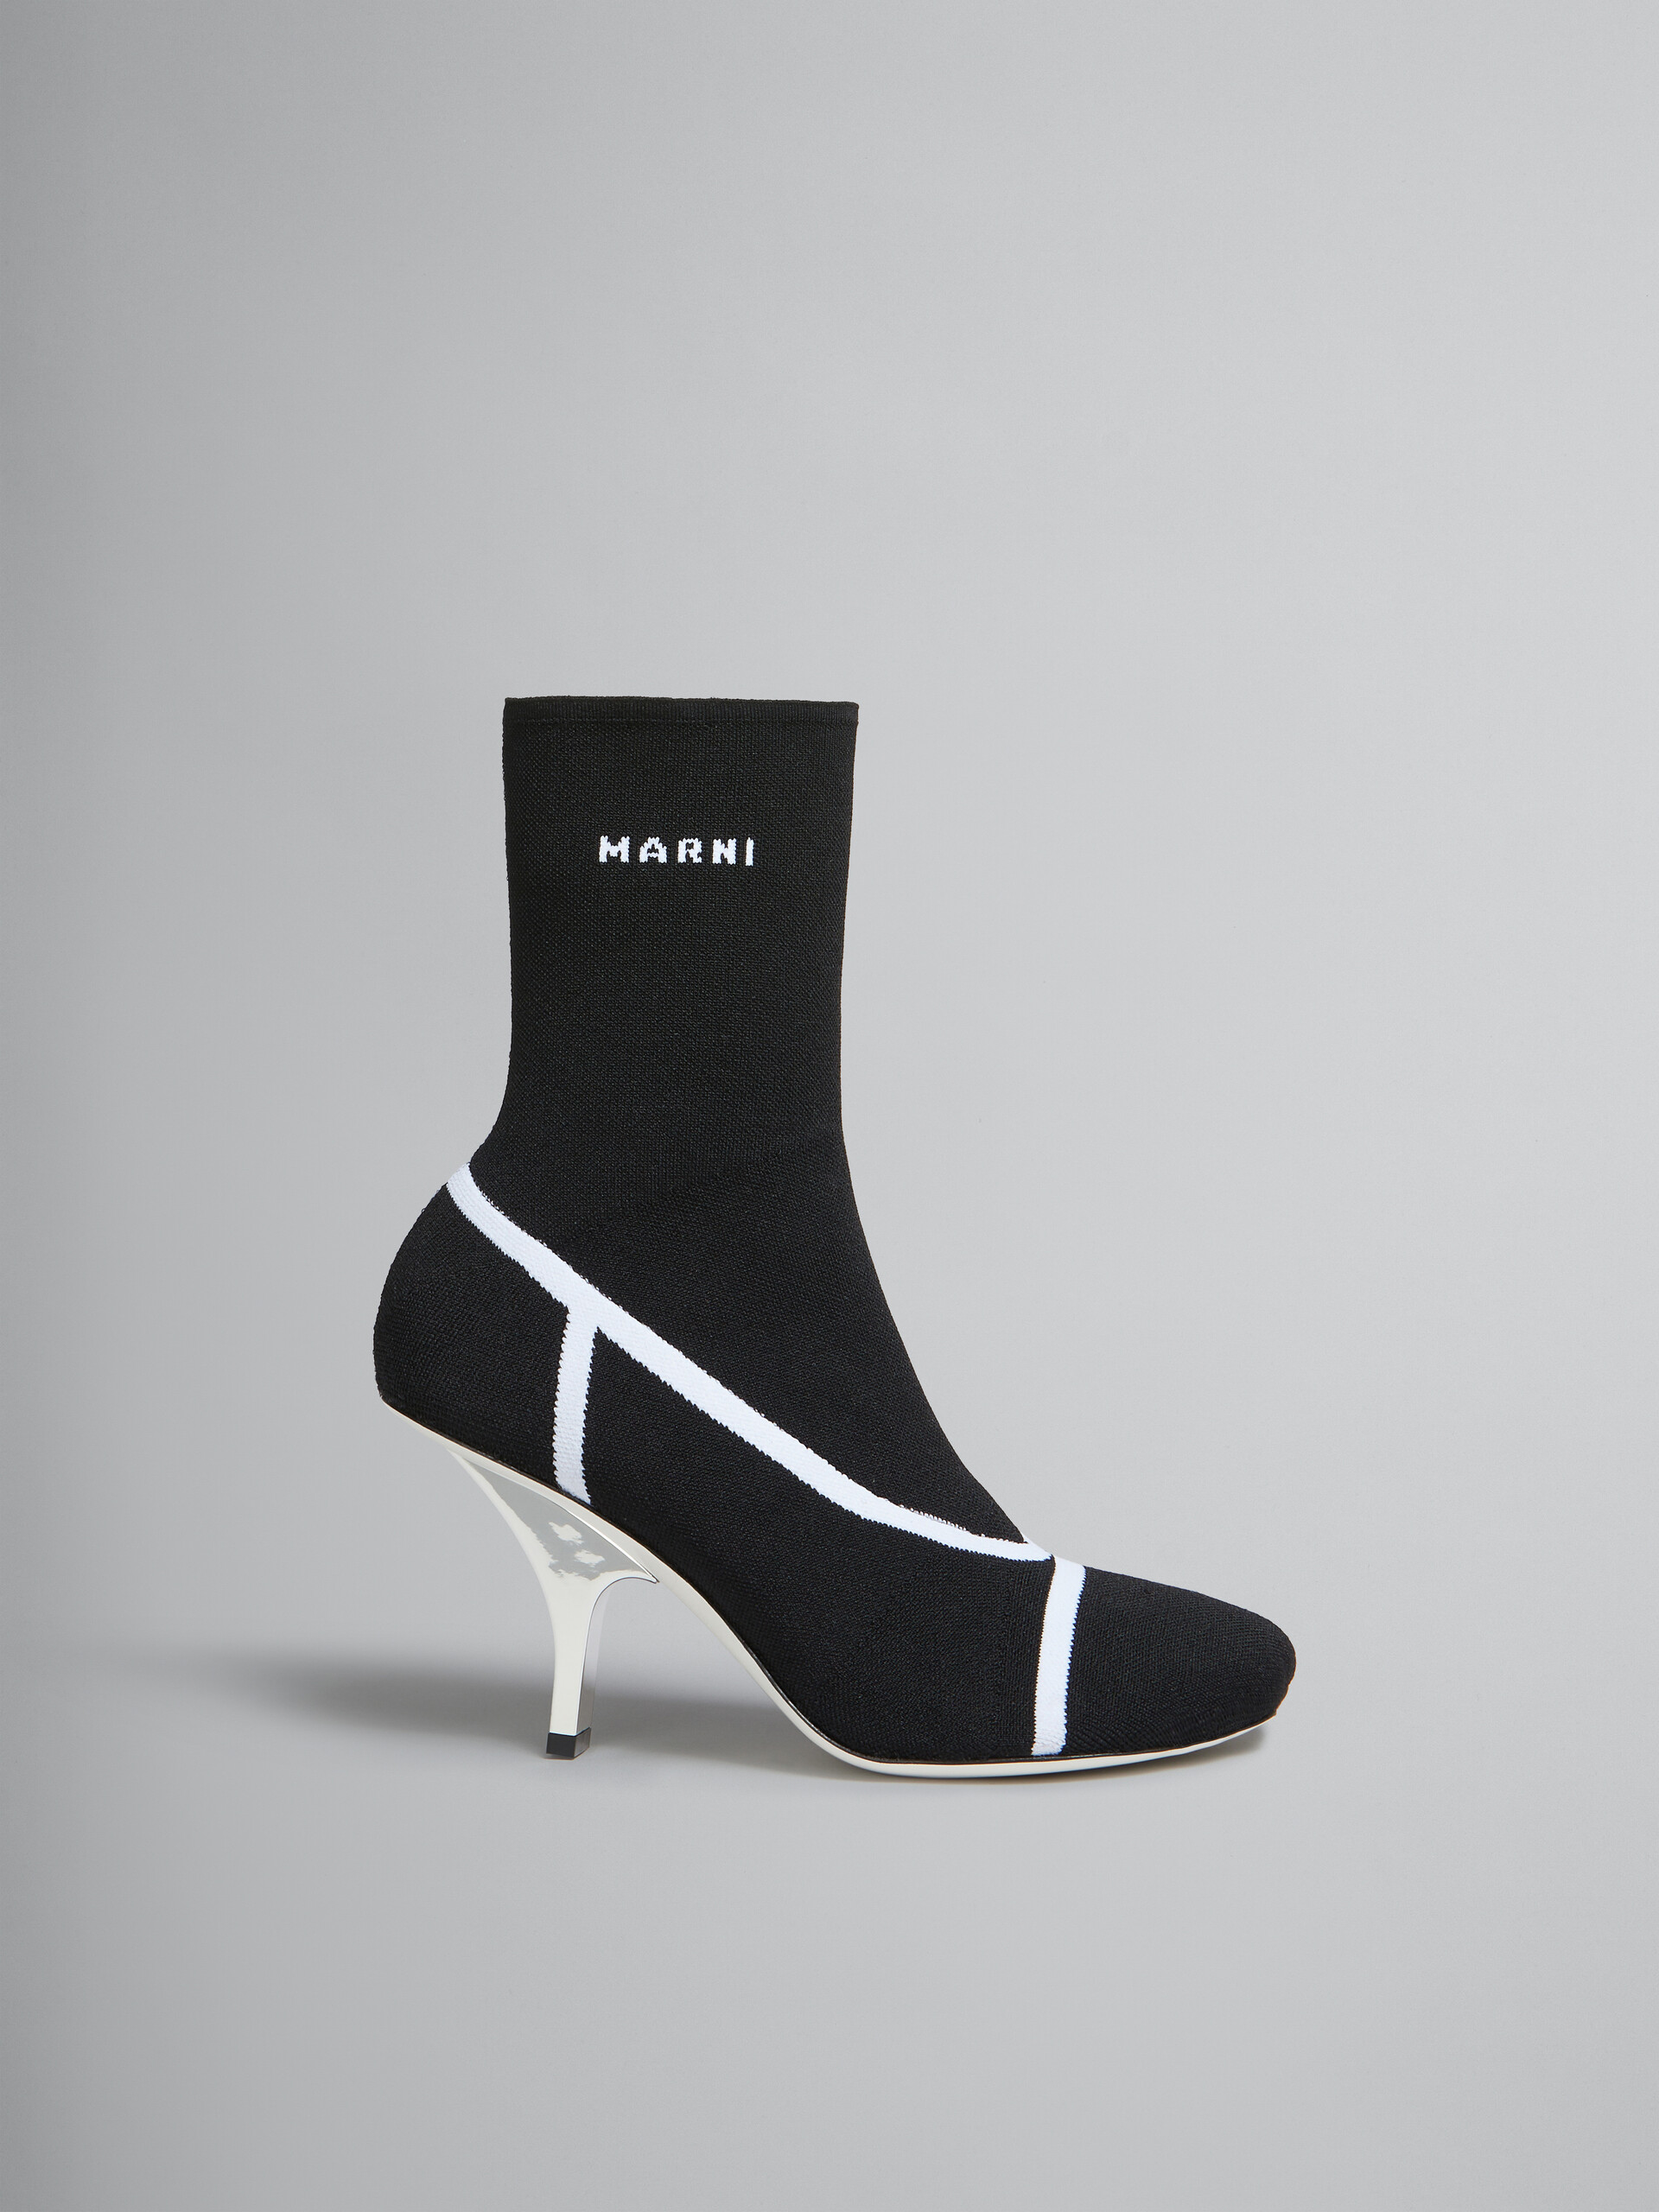 Bottines chaussettes Fancy en maille stretch noire - Bottes - Image 1